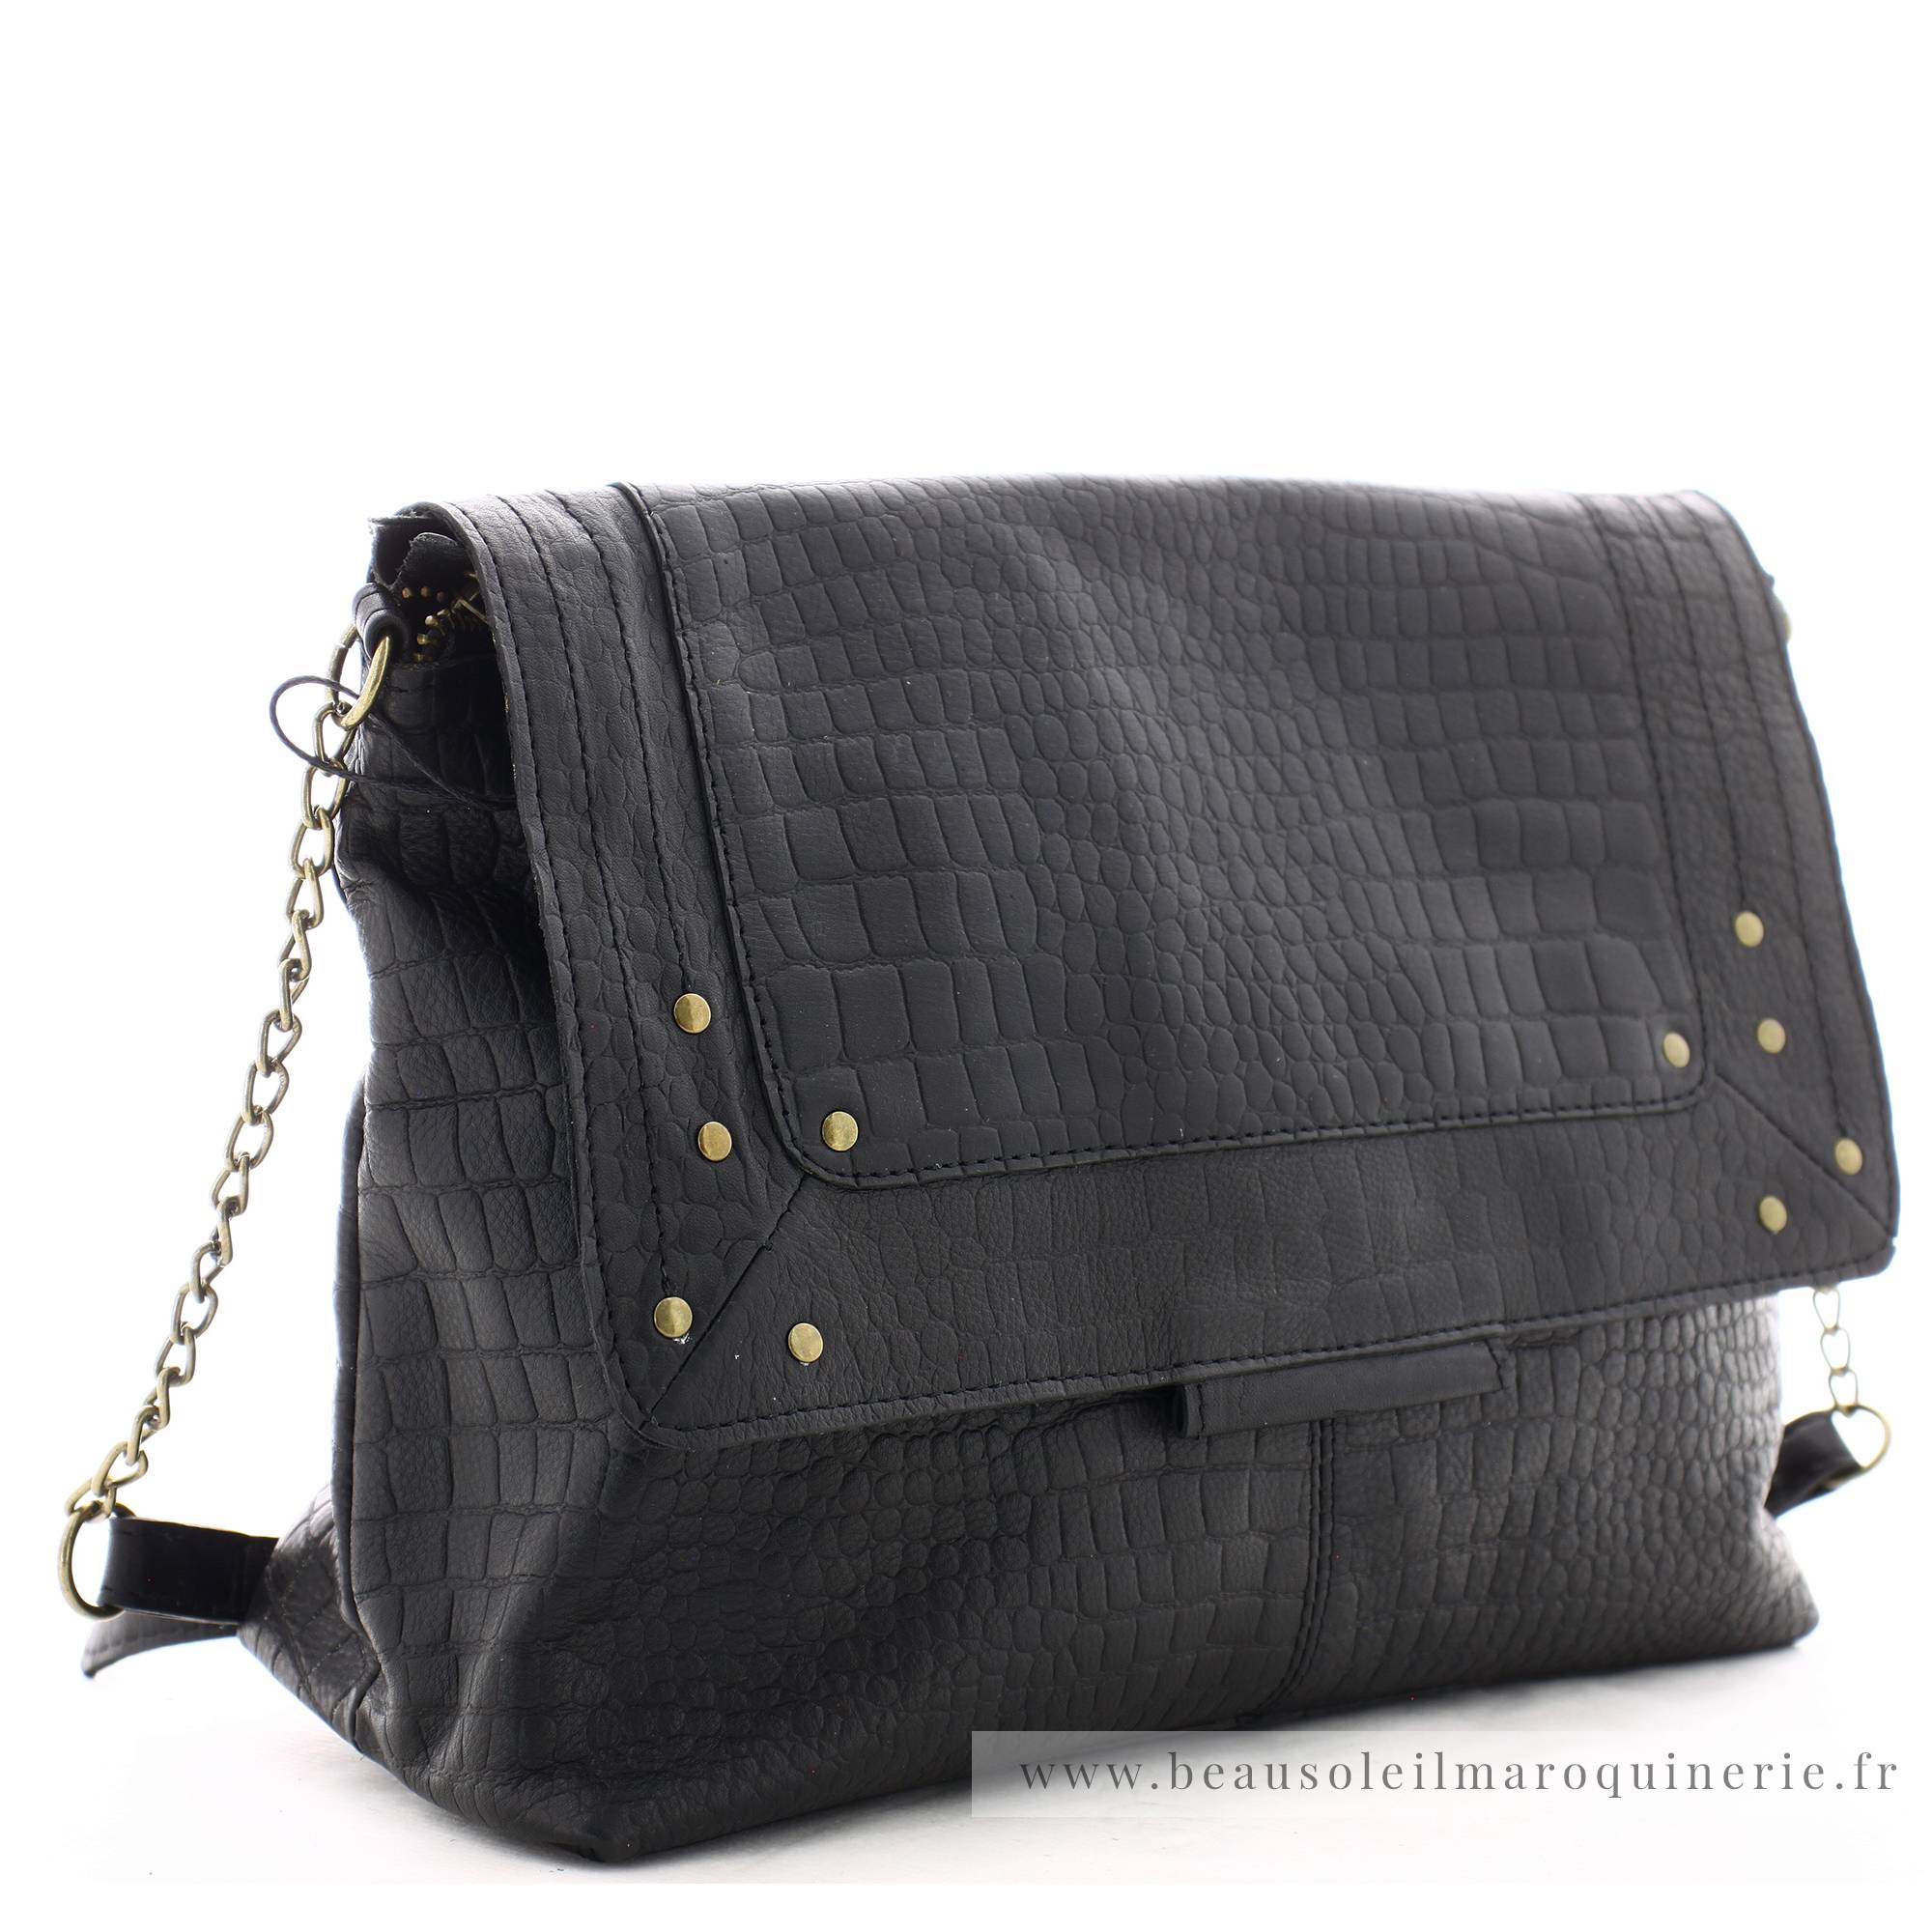 Grand sac Pieces besace Felizia cuir à rabat 17116819 BLCR noir croco vue de profil